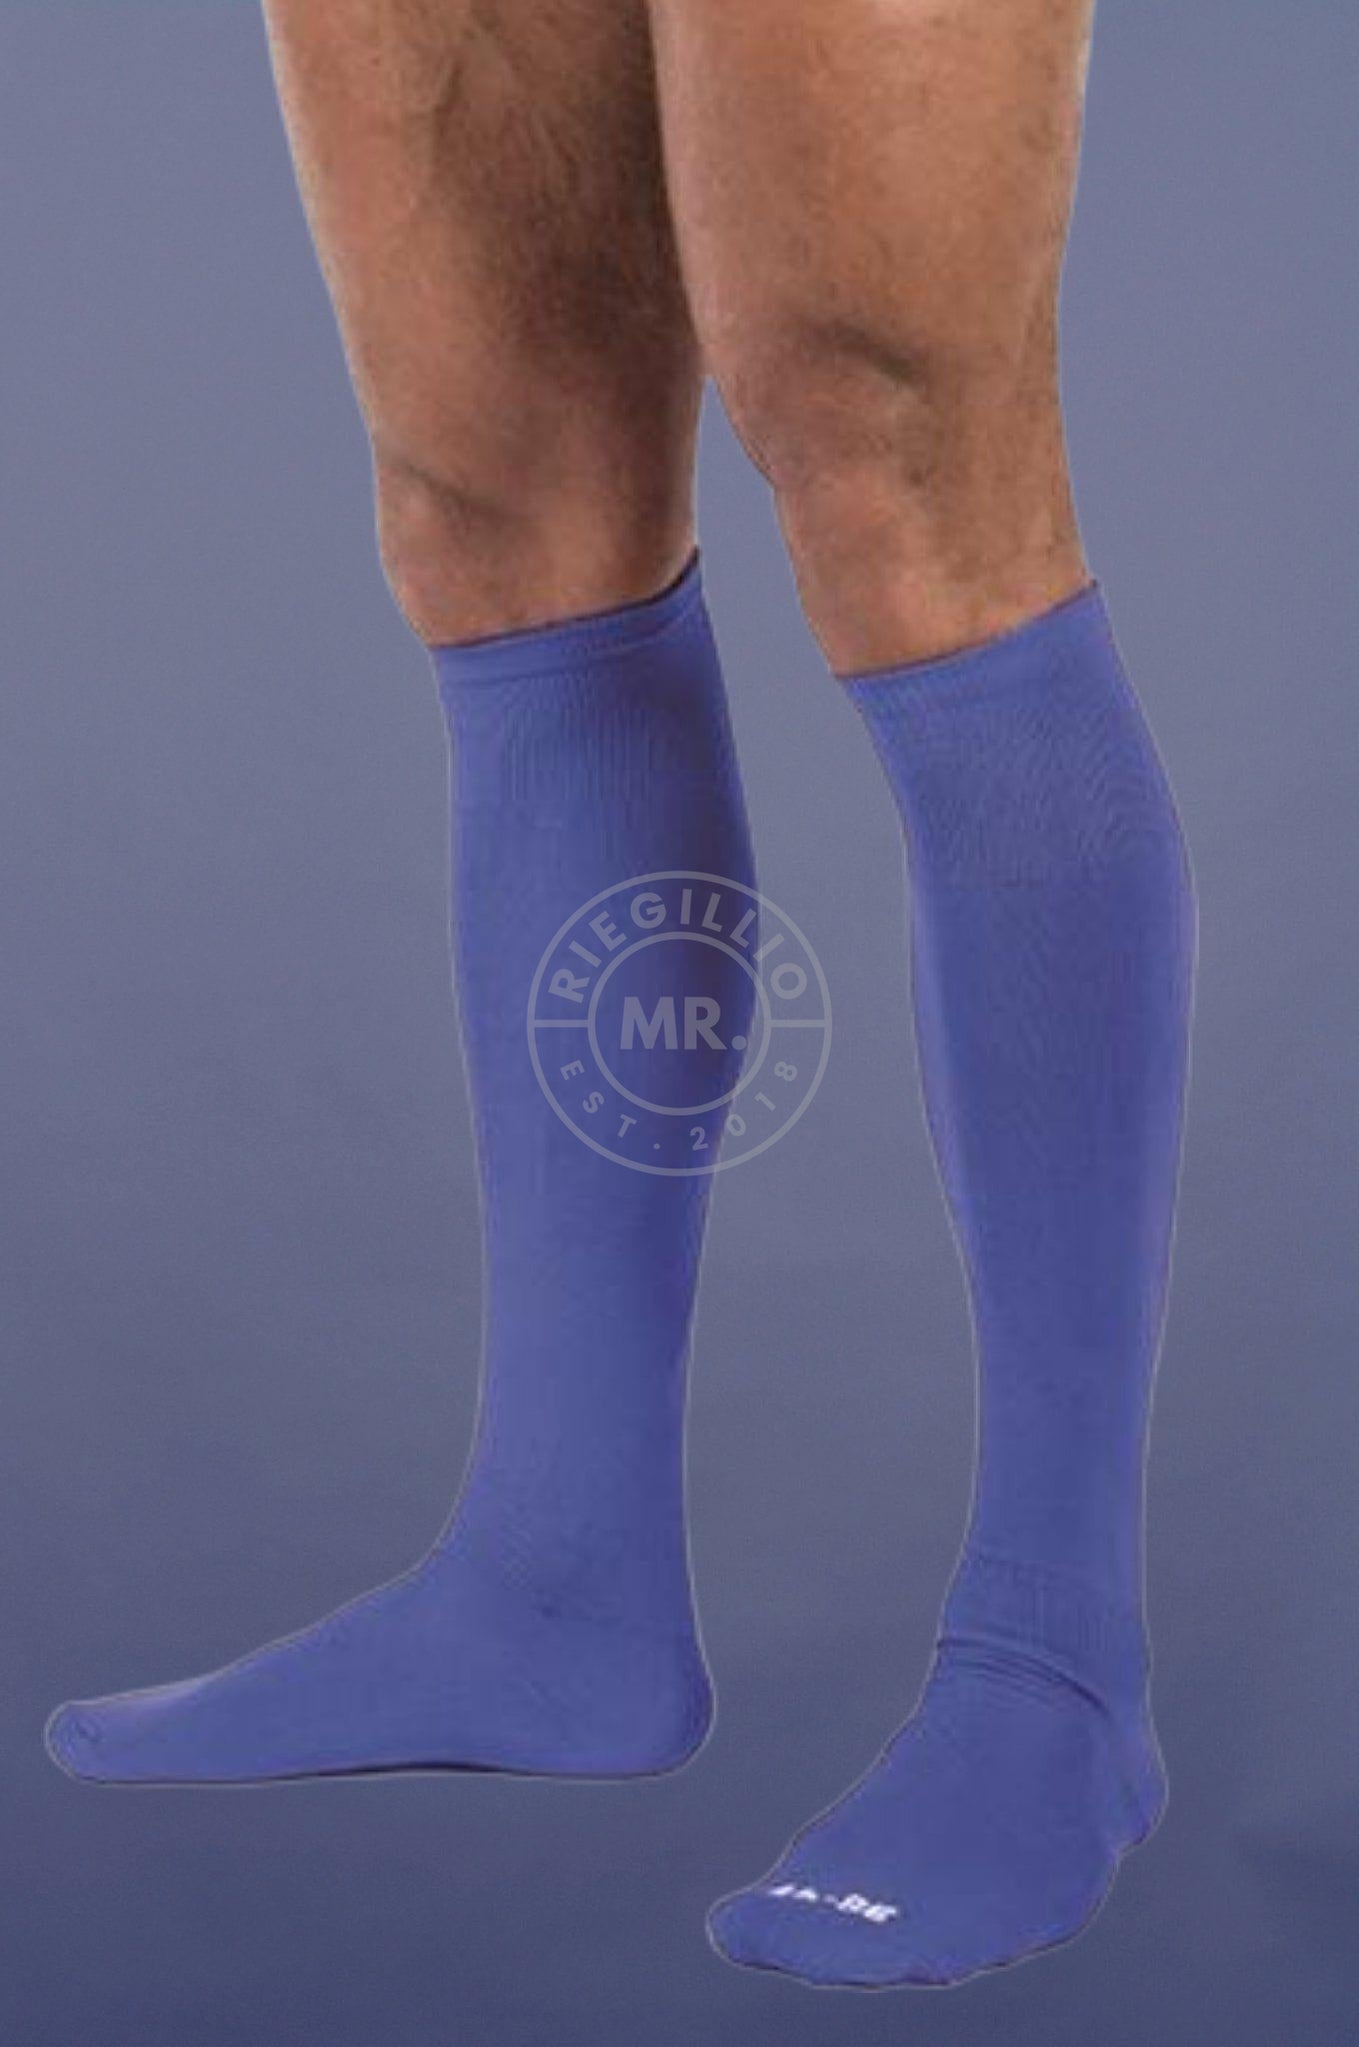 Football Socks Blue-at MR. Riegillio